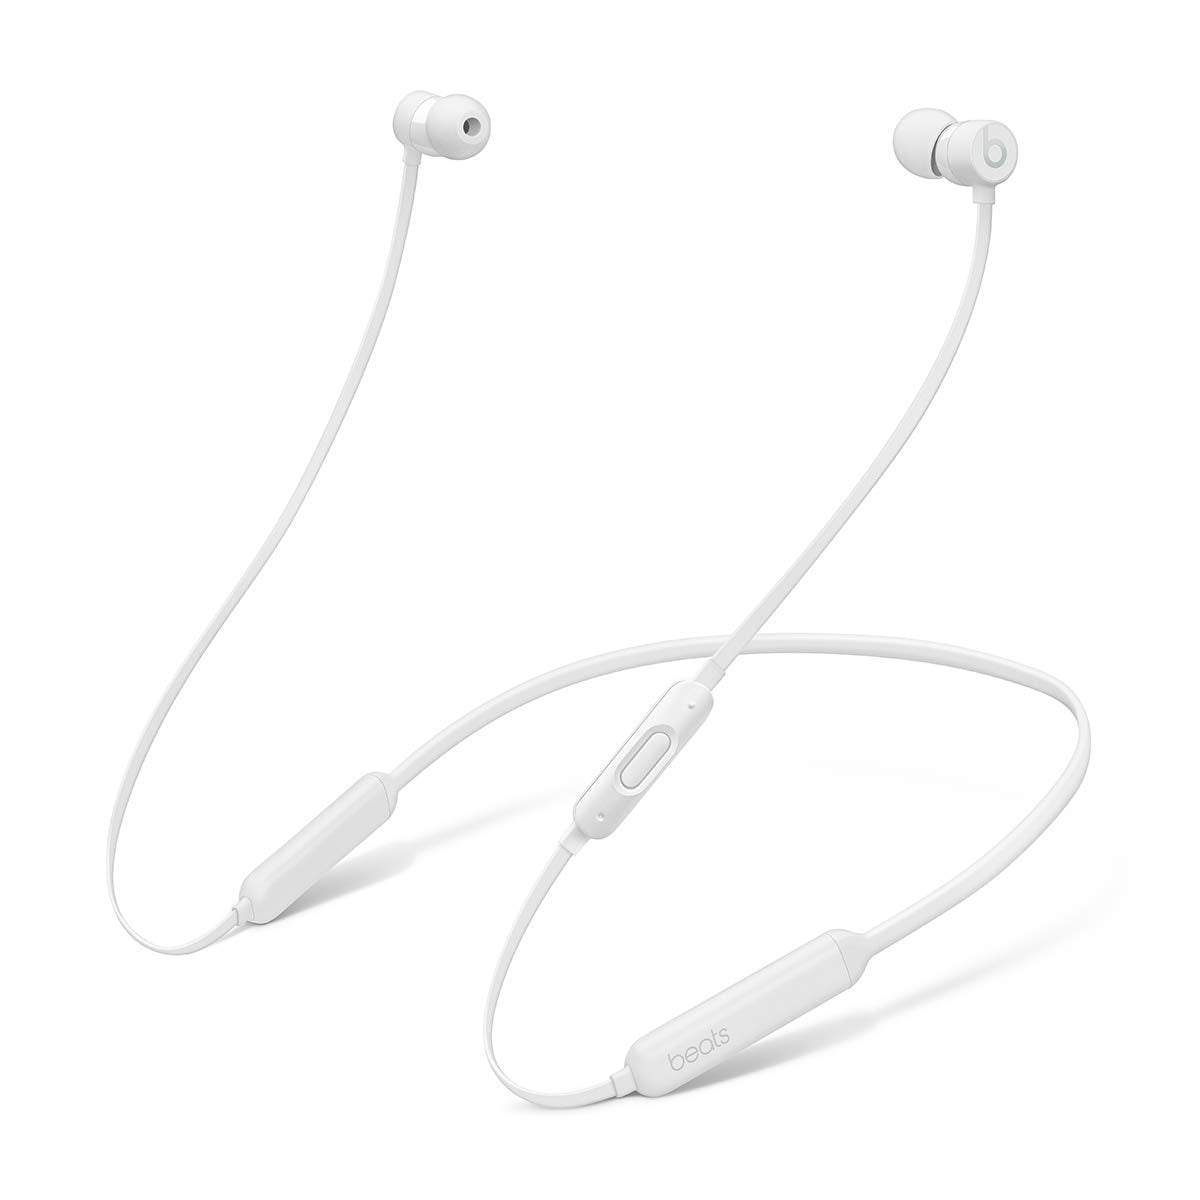 Beats By Dre BeatsX Wireless In-Ear Headphones 2018 - White (Certified Refurbished)